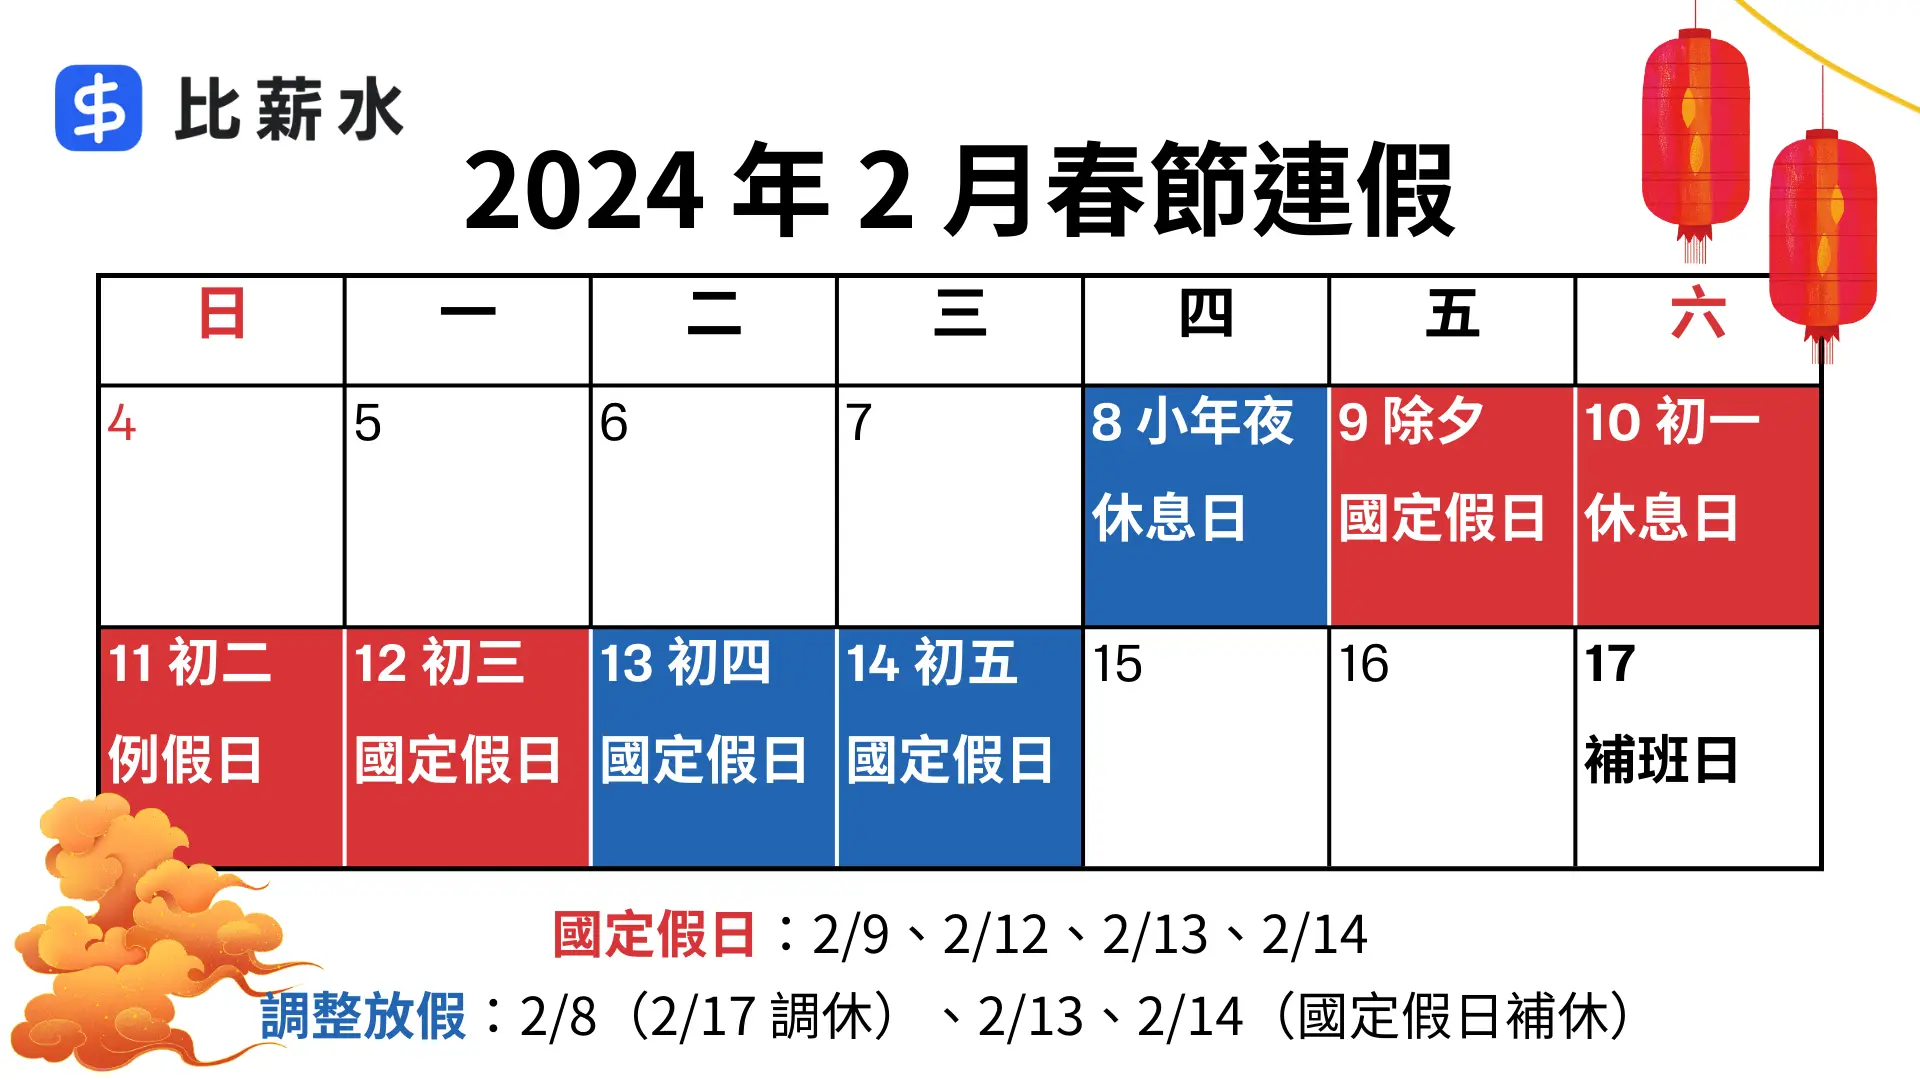 2024-過年-春節-連假-雙倍薪-行事曆